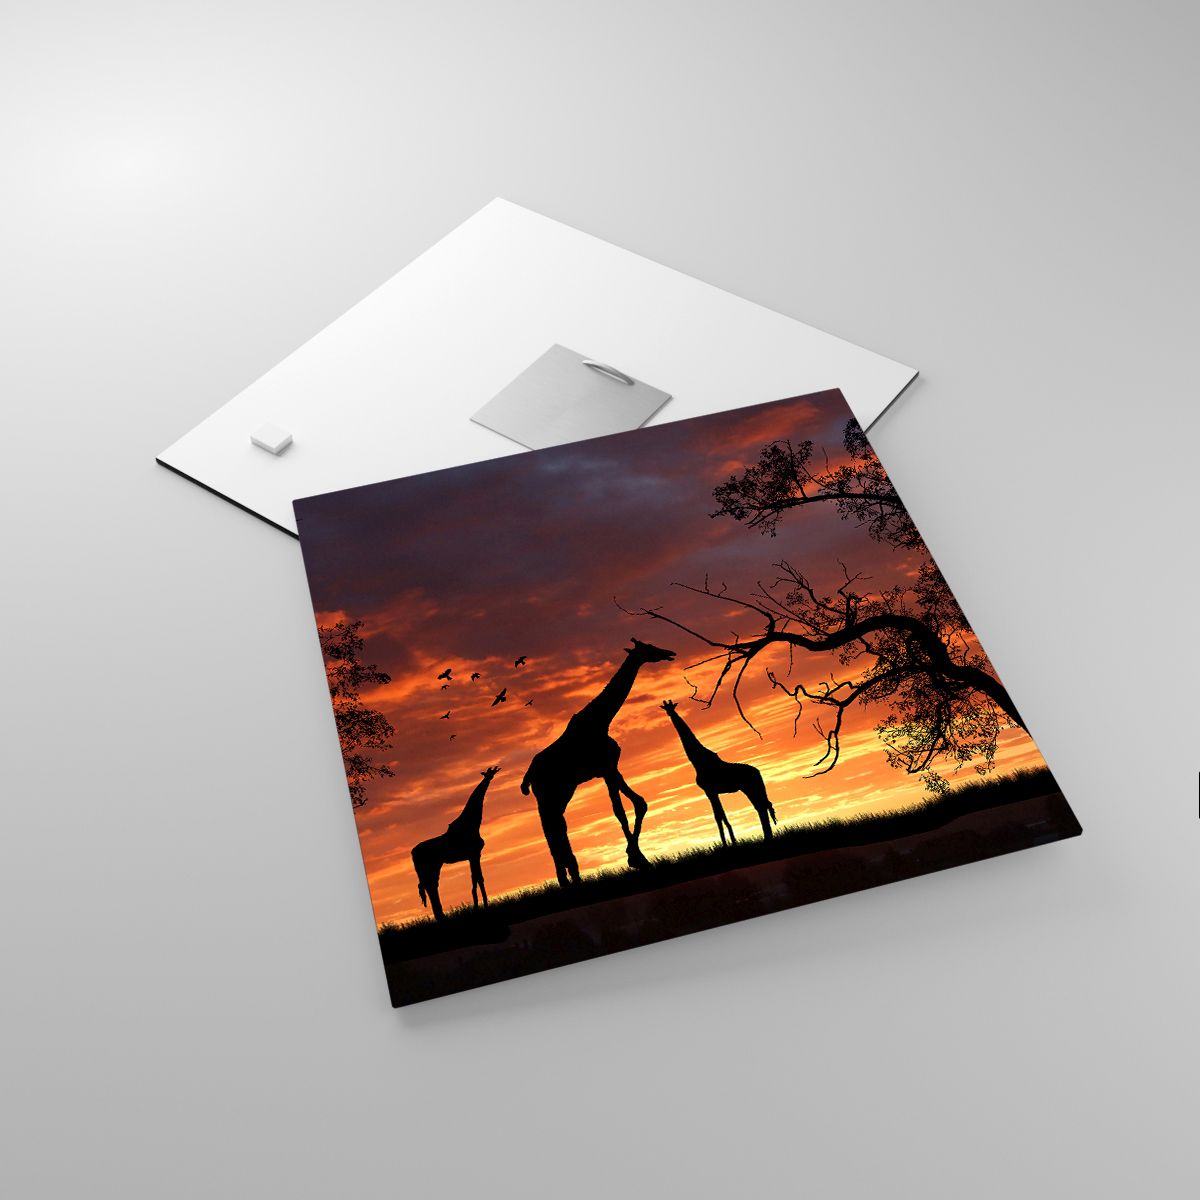 Glasbild Tiere, Glasbild Giraffe, Glasbild Afrika, Glasbild Natur, Glasbild Der Sonnenuntergang